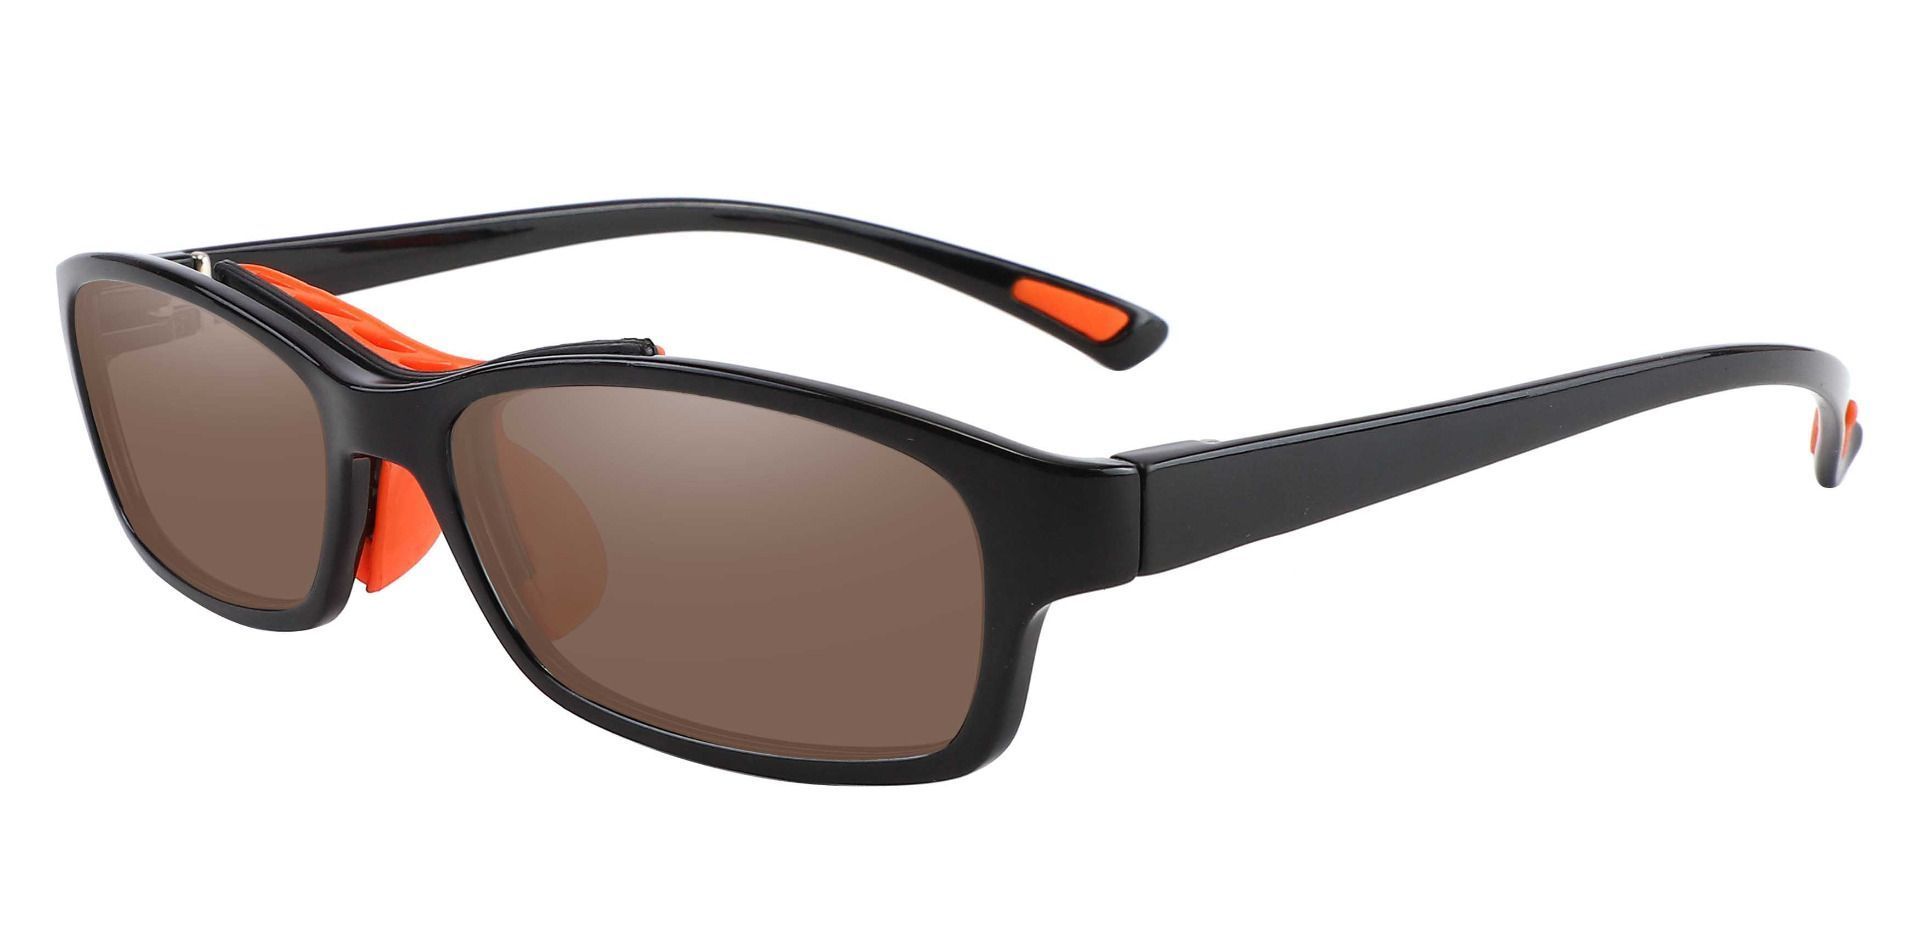 Glynn Rectangle Progressive Sunglasses - Black Frame With Brown Lenses